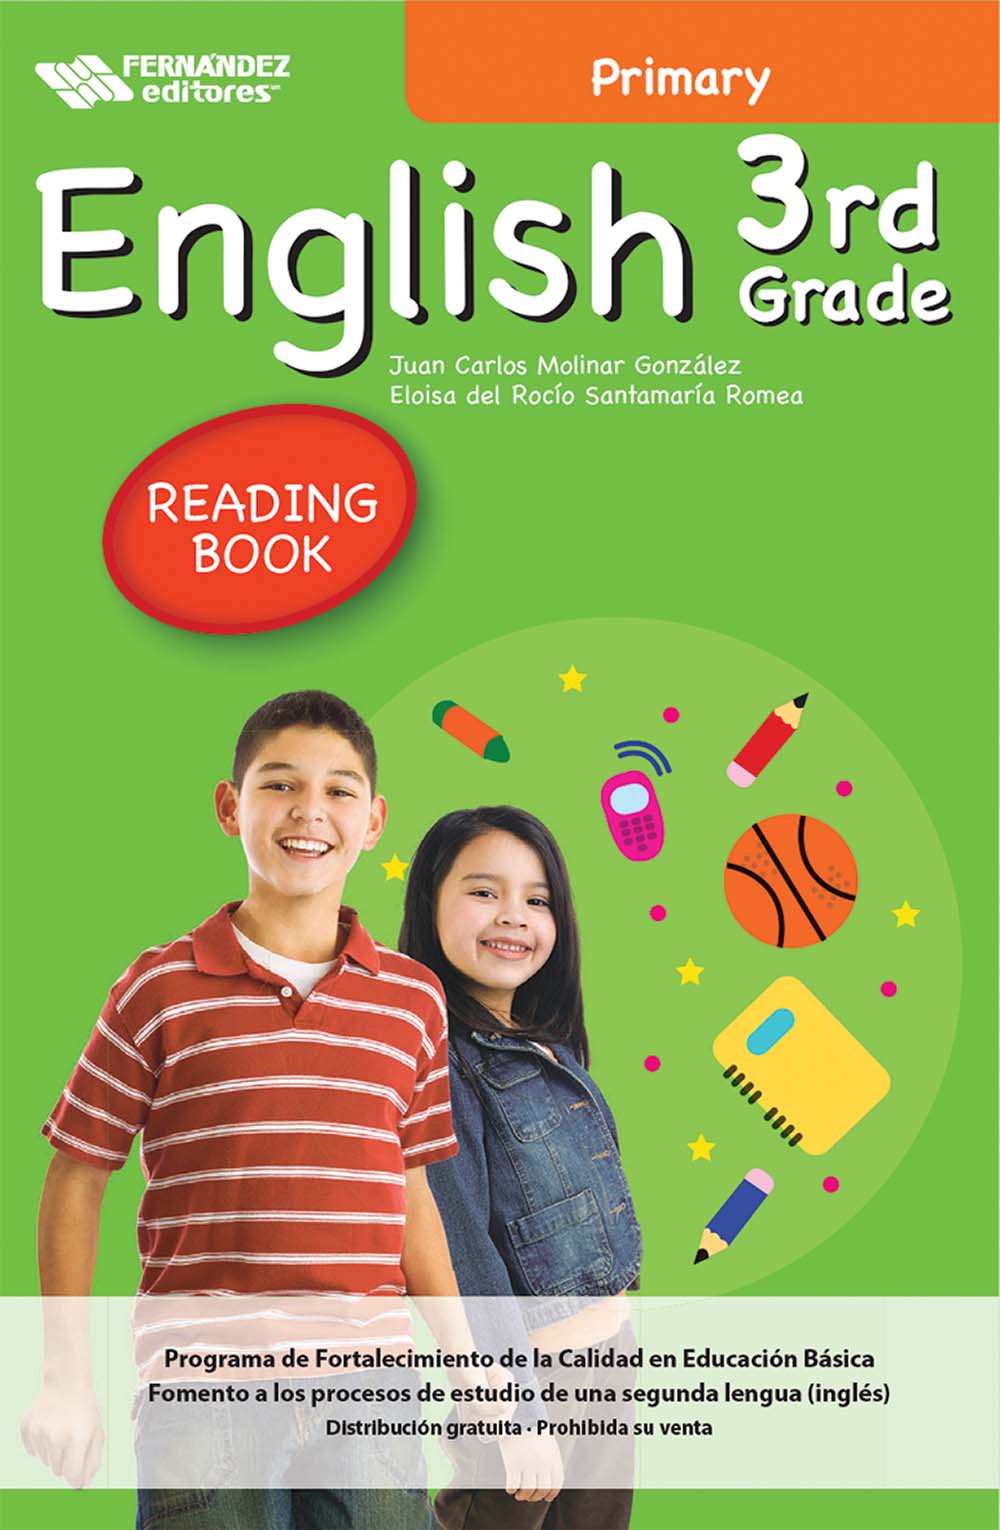 English 3th Grade Primary Libro de Lectura, Editorial: Fernández Editores, Nivel: Primaria, Grado: 3